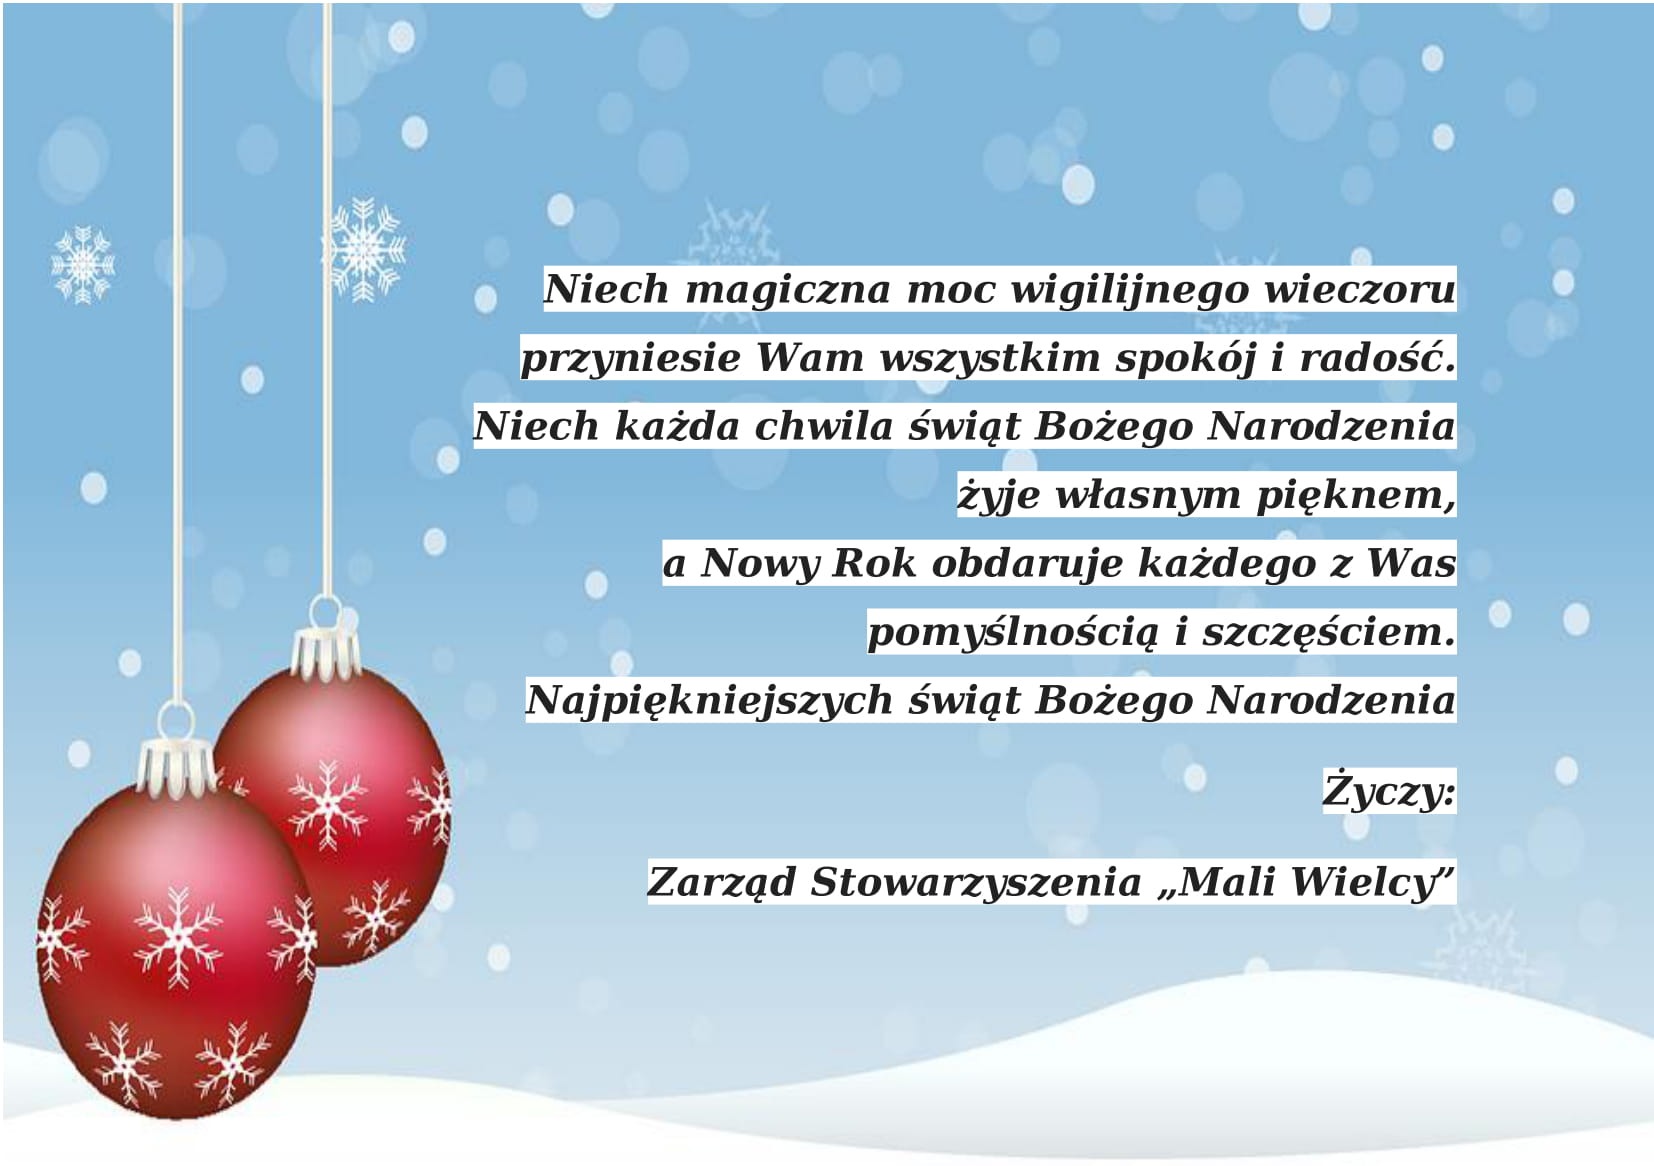 Życzenia świąteczne od Zarządu Stowarzyszenia "Mali Wielcy" - Obrazek 1